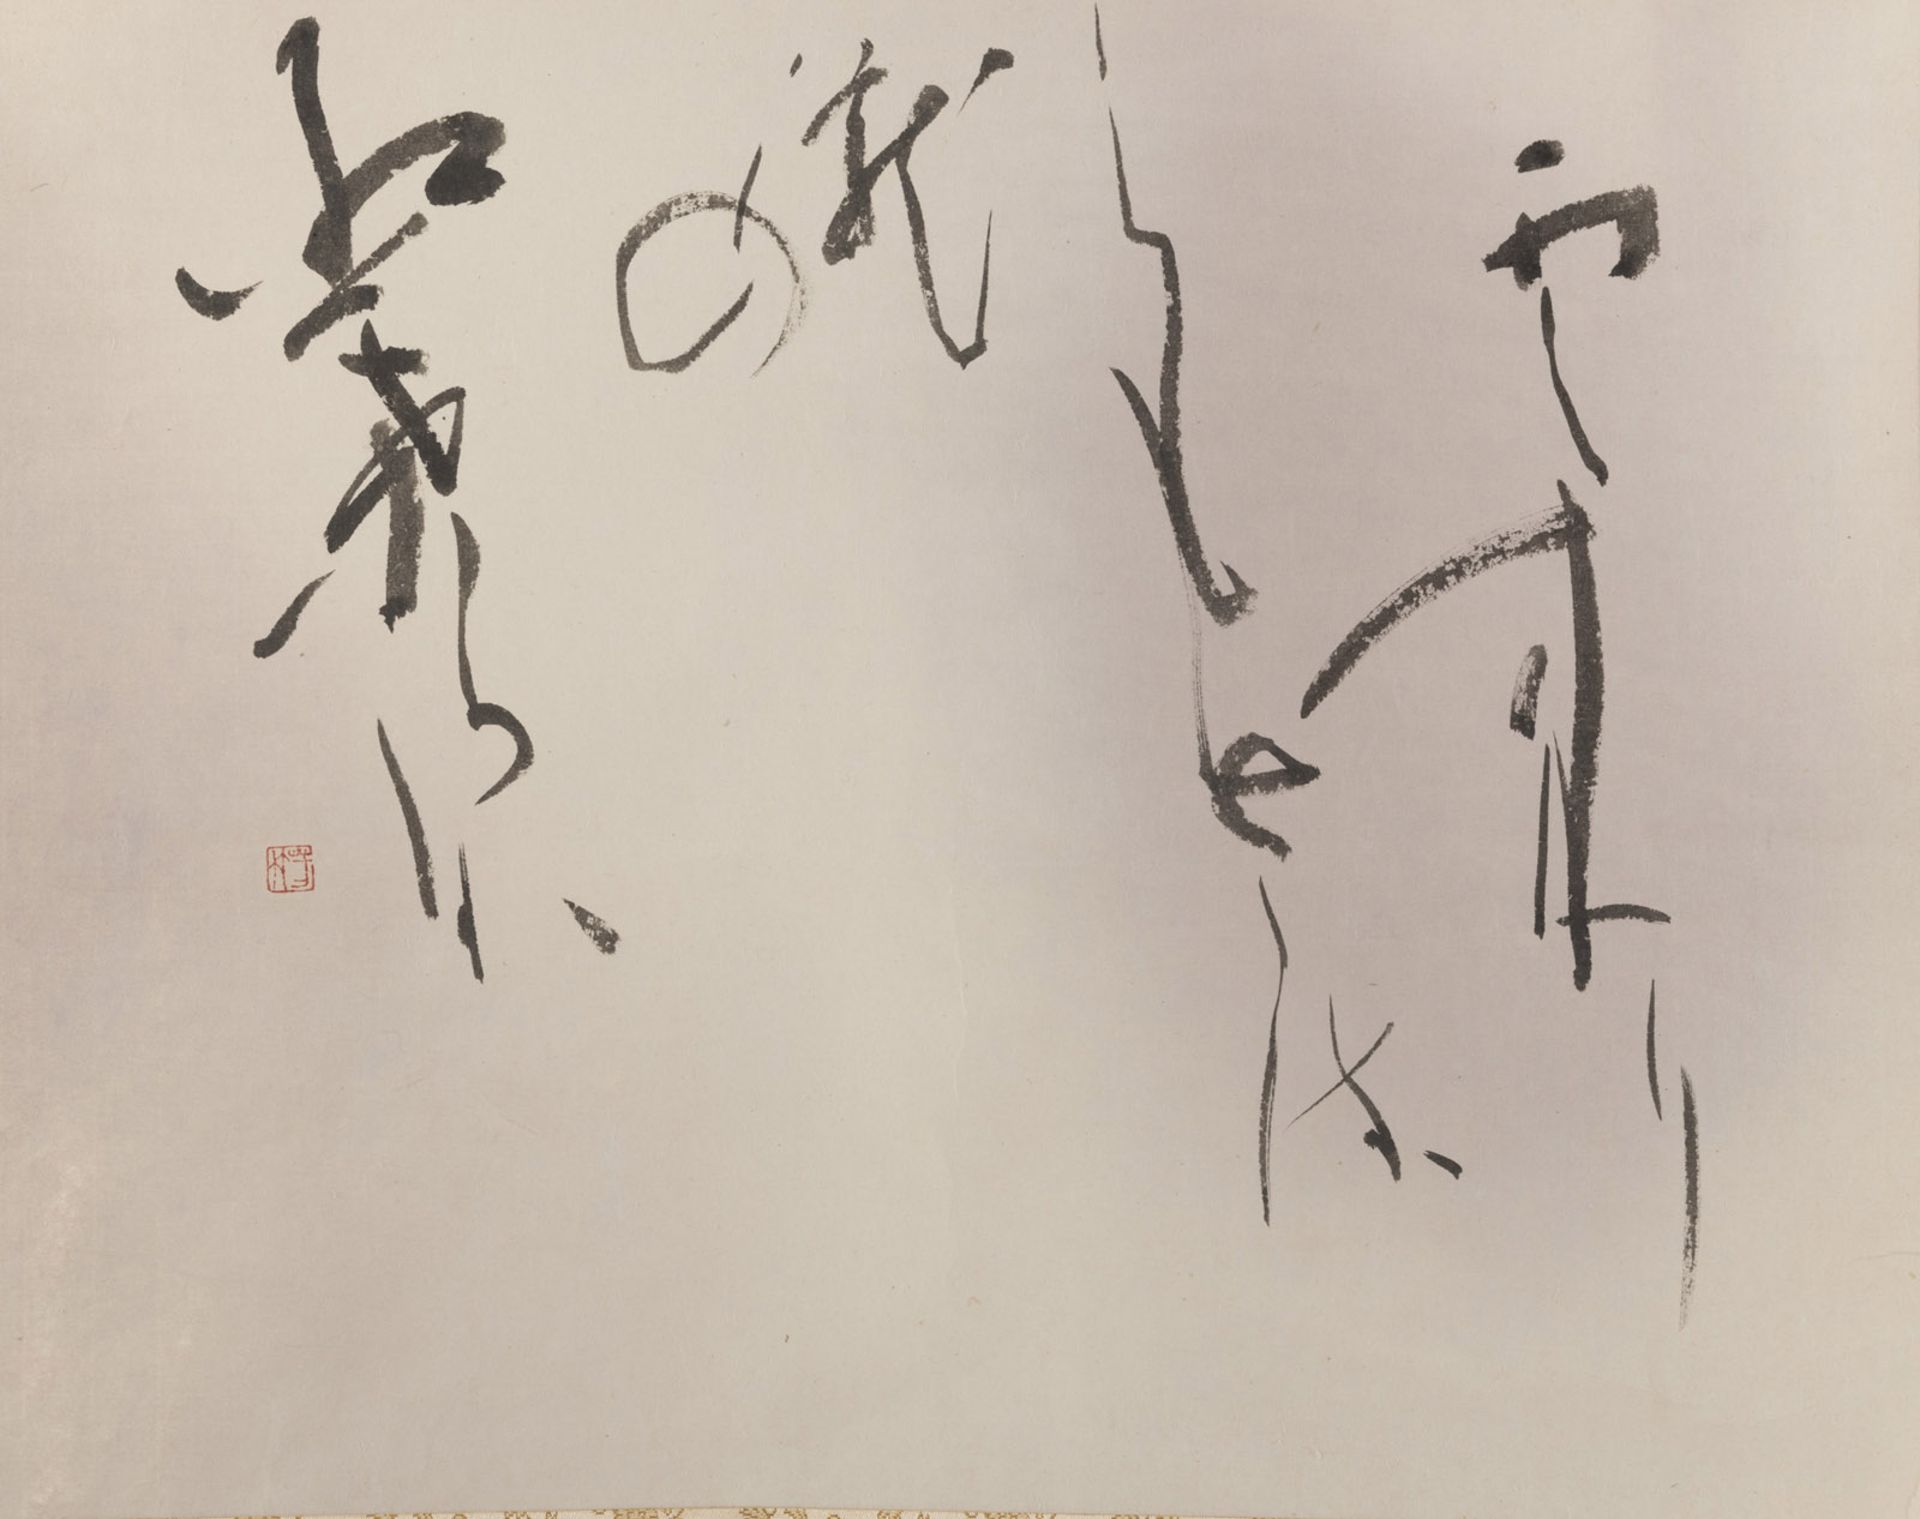 YOSHITAKE KONDO: POEM BY SOSEKI NATSUME, INK ON PAPER